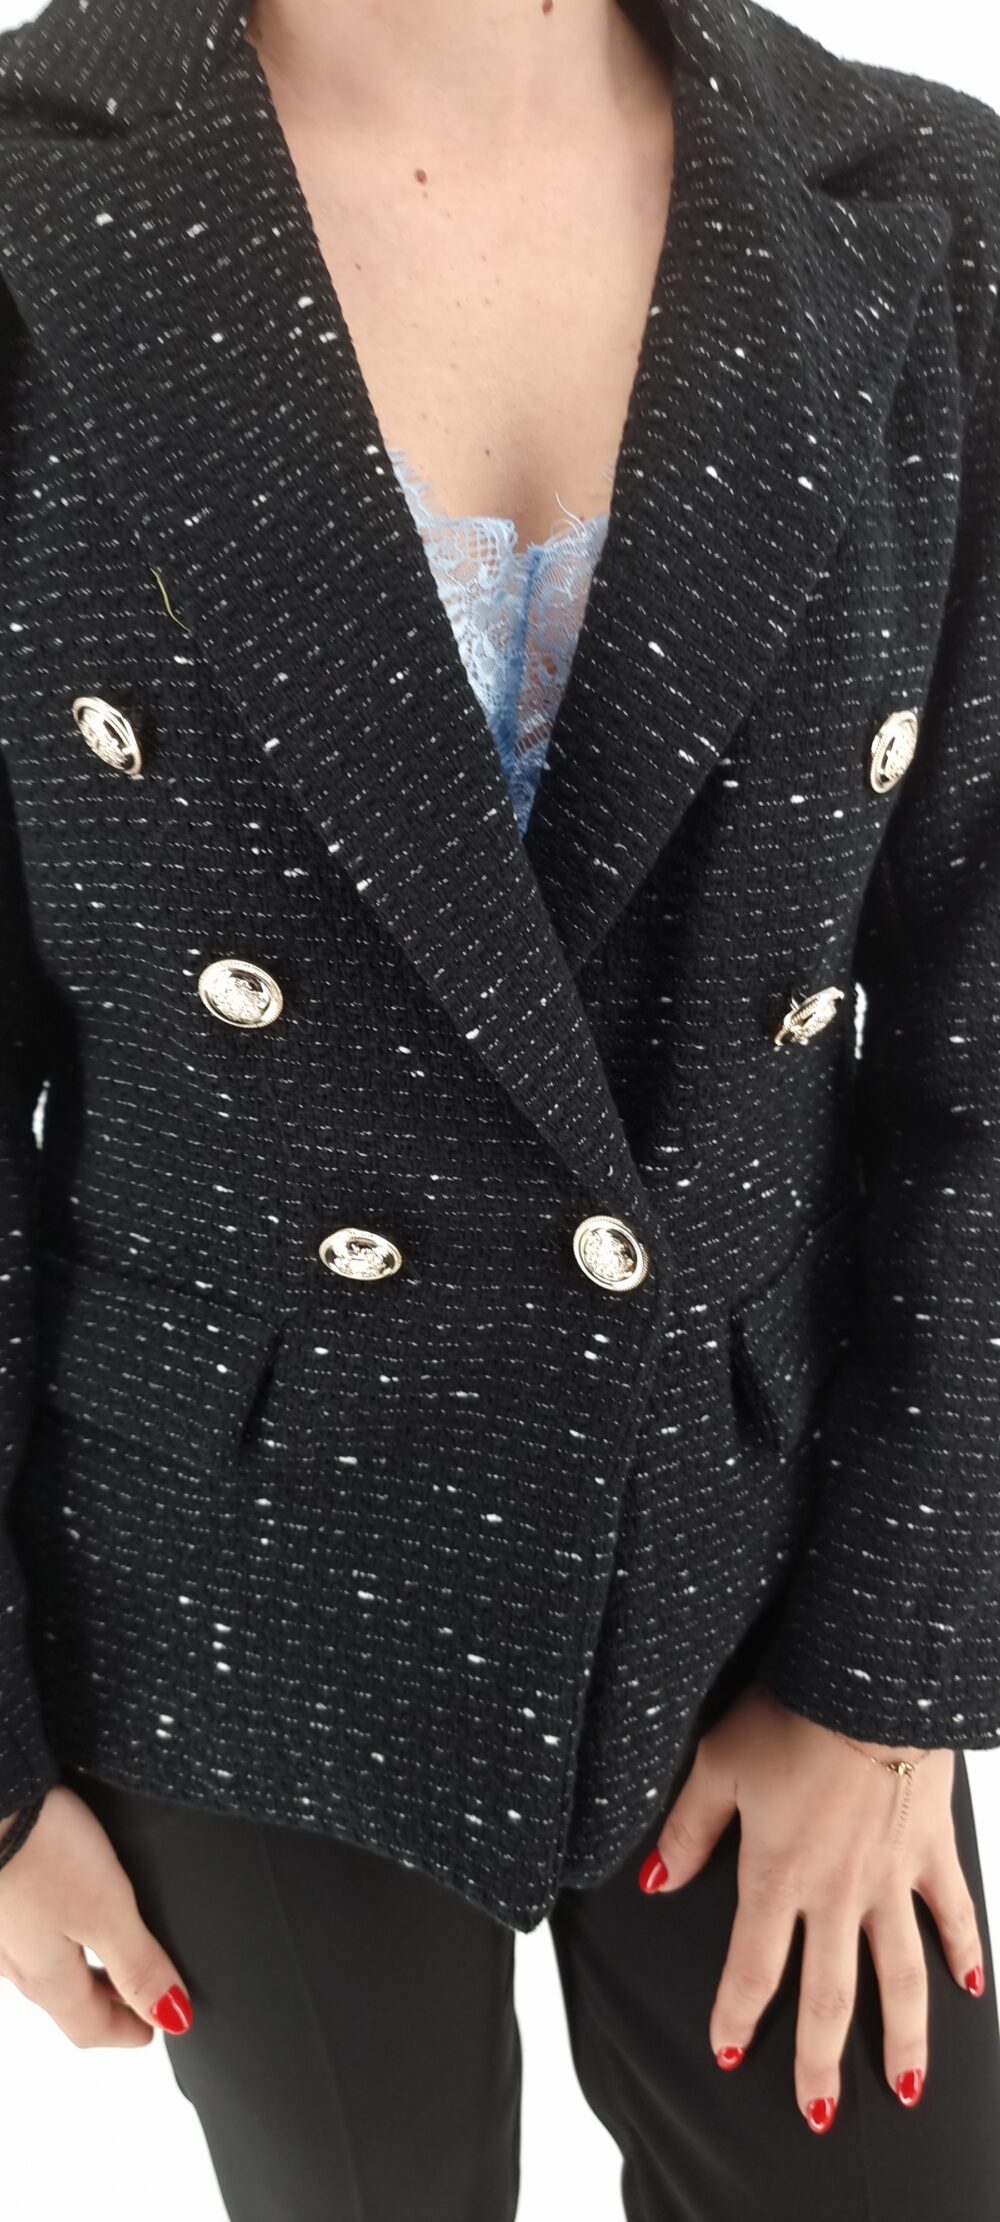 Μαύρο πλεκτό σακάκι με άσπρα σχέδια και χρυσά κουμπιά